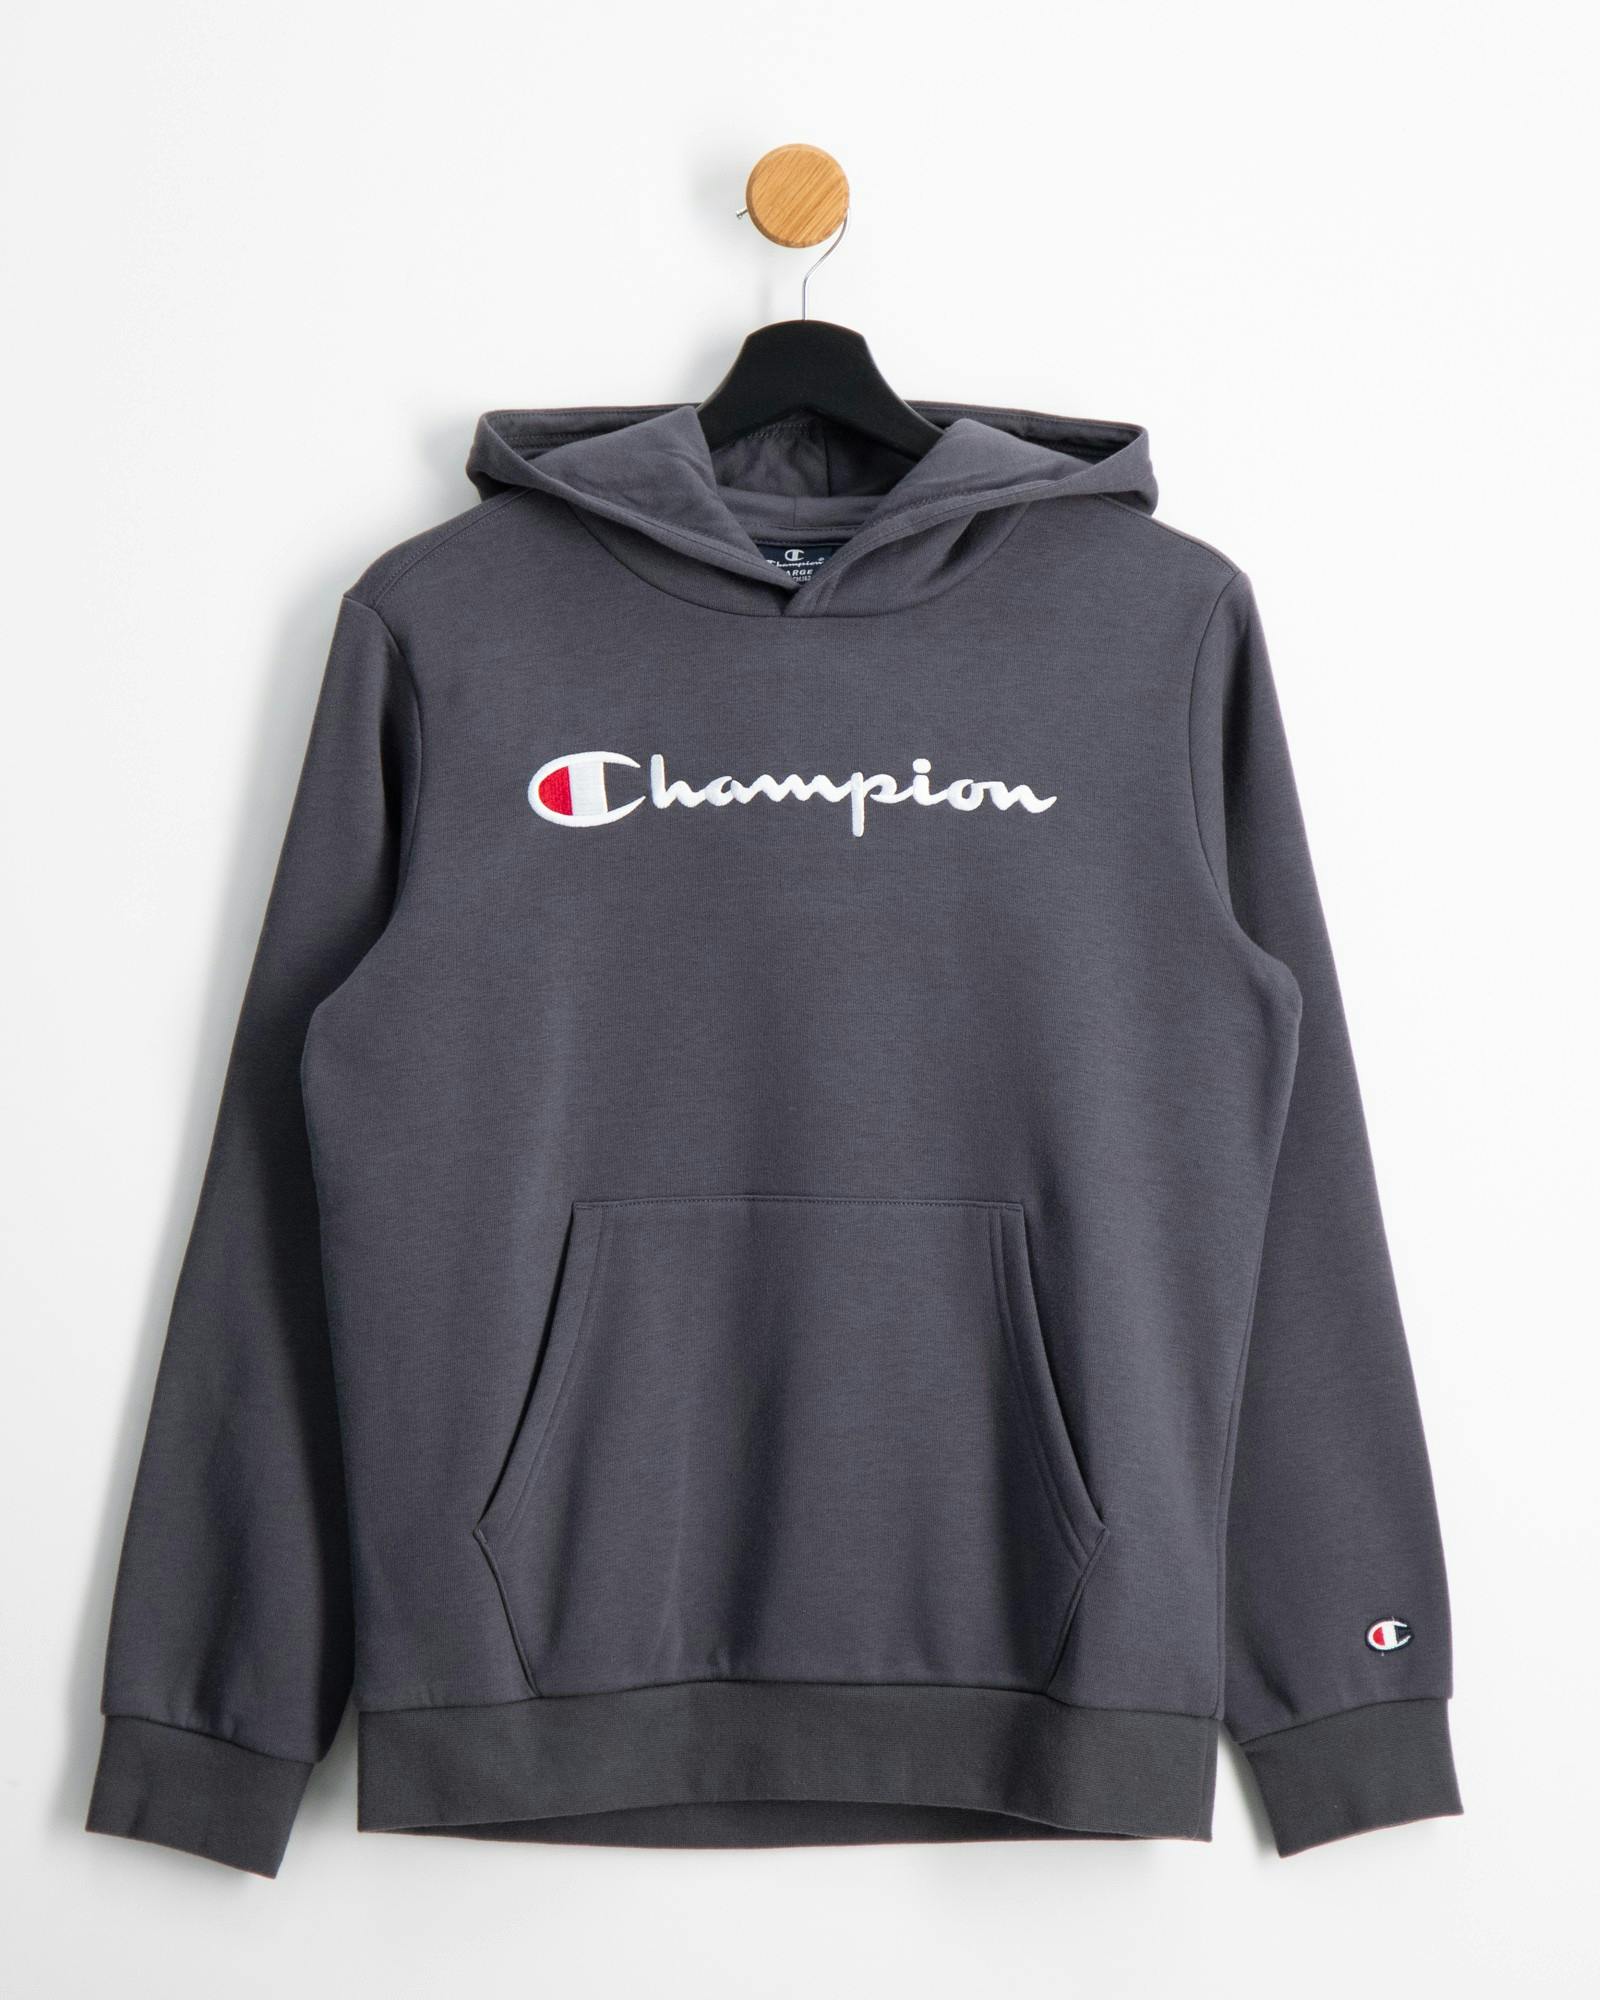 Champion Brand | Kids Kinder Jugendliche und für Store